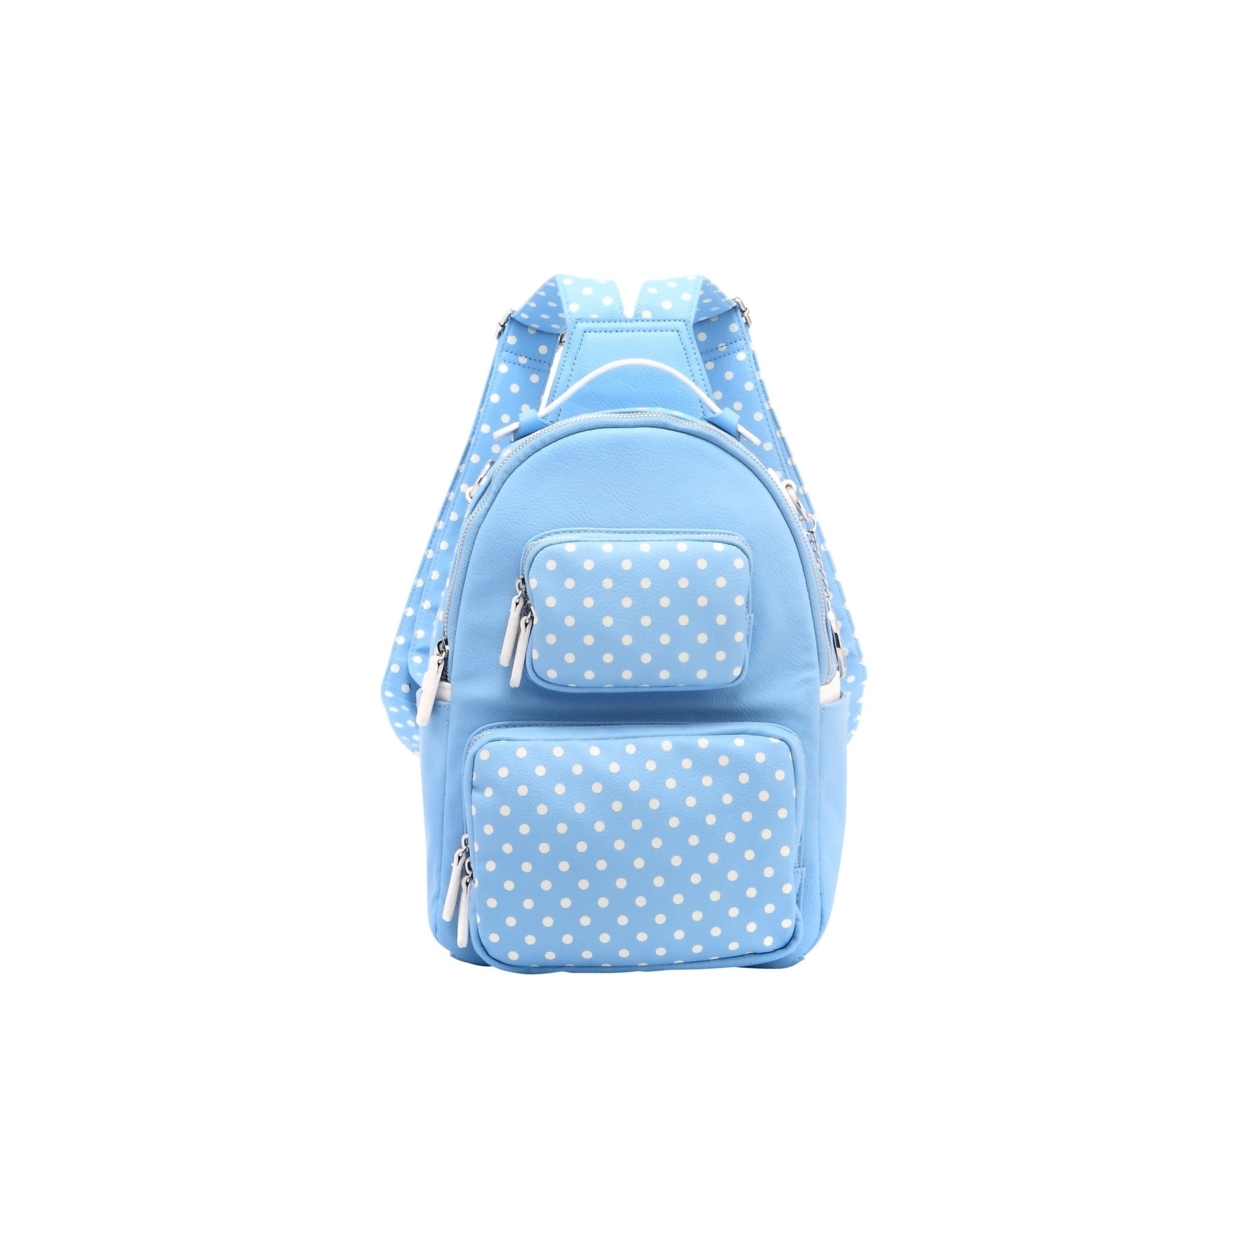 SCORE! Natalie Michelle Medium Polka Dot Designer Backpack - Light Blue And White